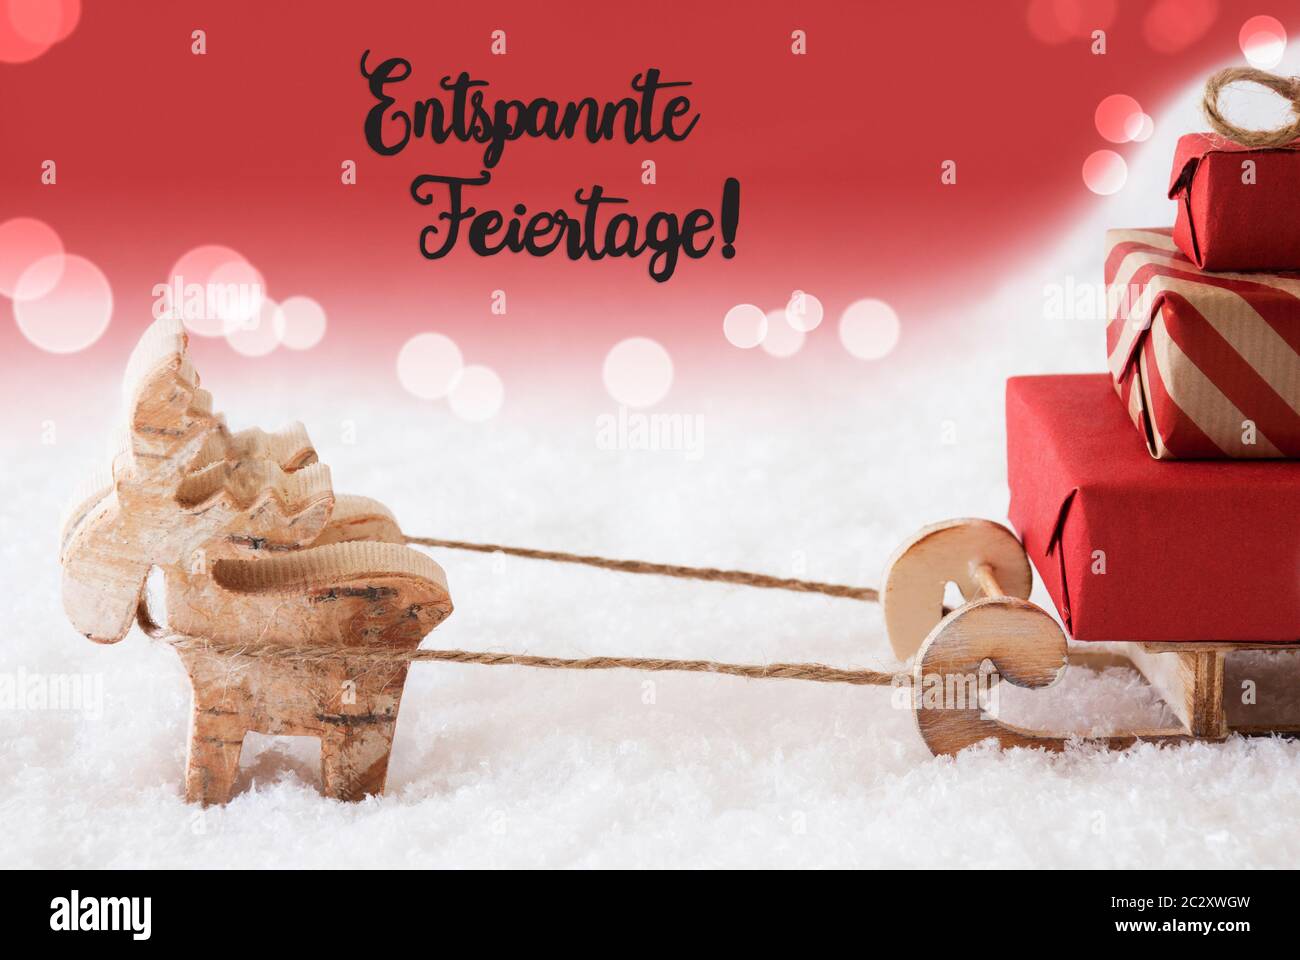 Renos y trineo con regalos de Navidad y nieve. Fondo roja brillante con caligrafía alemana Entspannte Feiertage significa ¡Feliz Navidad! Foto de stock